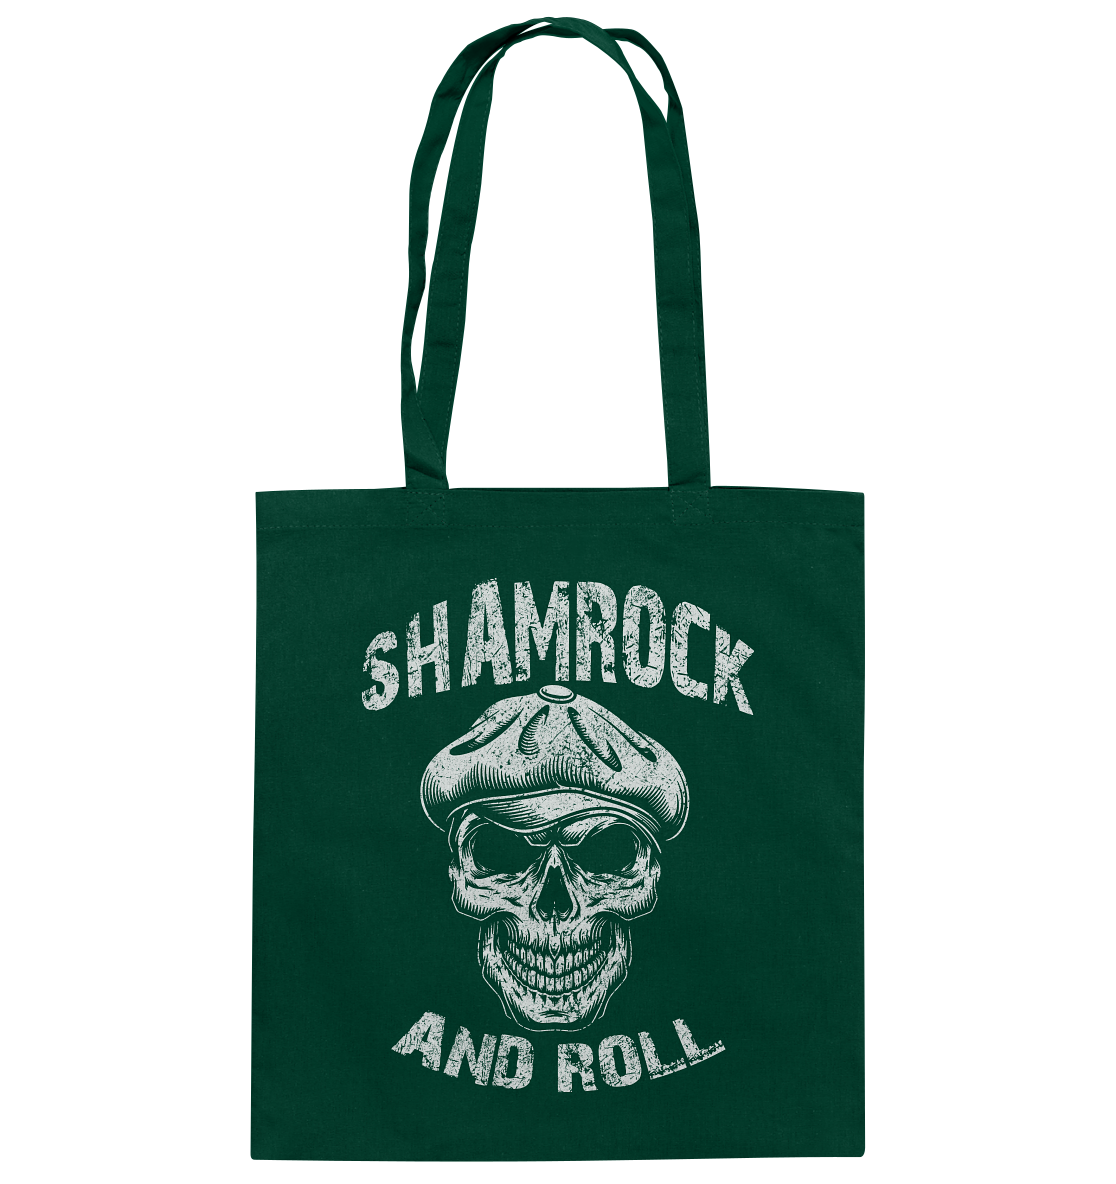 Shamrock And Roll "Skull" - Baumwolltasche